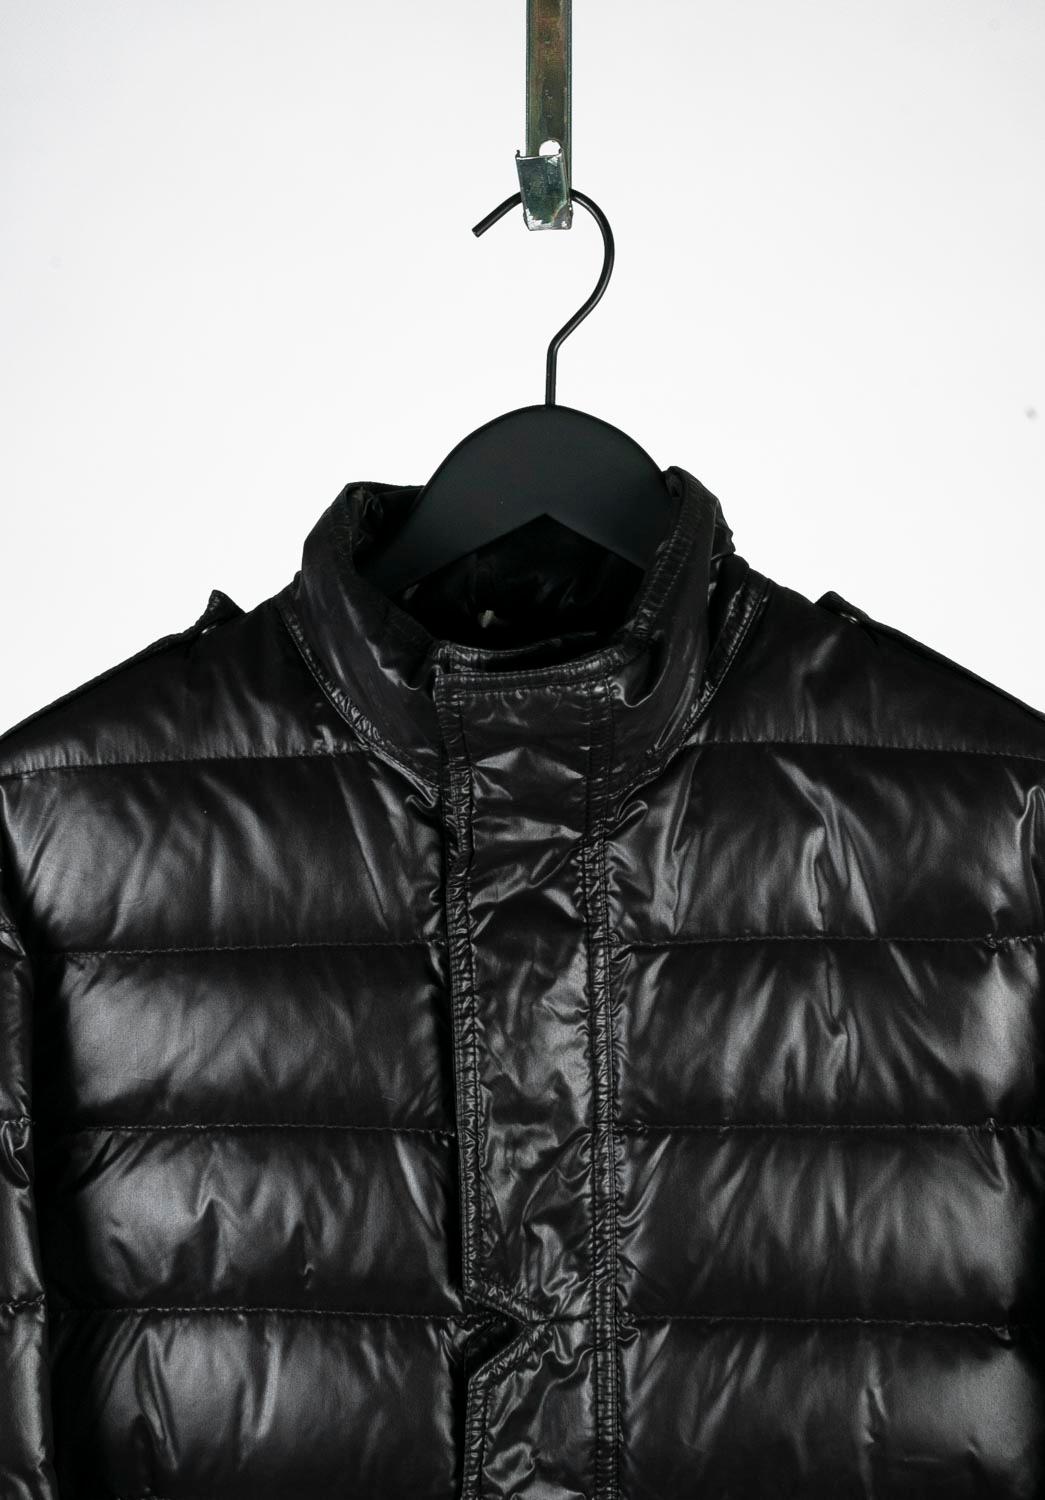 100% echte Dior Homme AW07 Daunenjacke für Männer 
Farbe: Schwarz
(Eine tatsächliche Farbe kann ein wenig variieren aufgrund individueller Computer-Bildschirm Interpretation)
MATERIAL: 100% Nylon
Tag Größe: 48IT (mittel)
Diese Jacke ist von